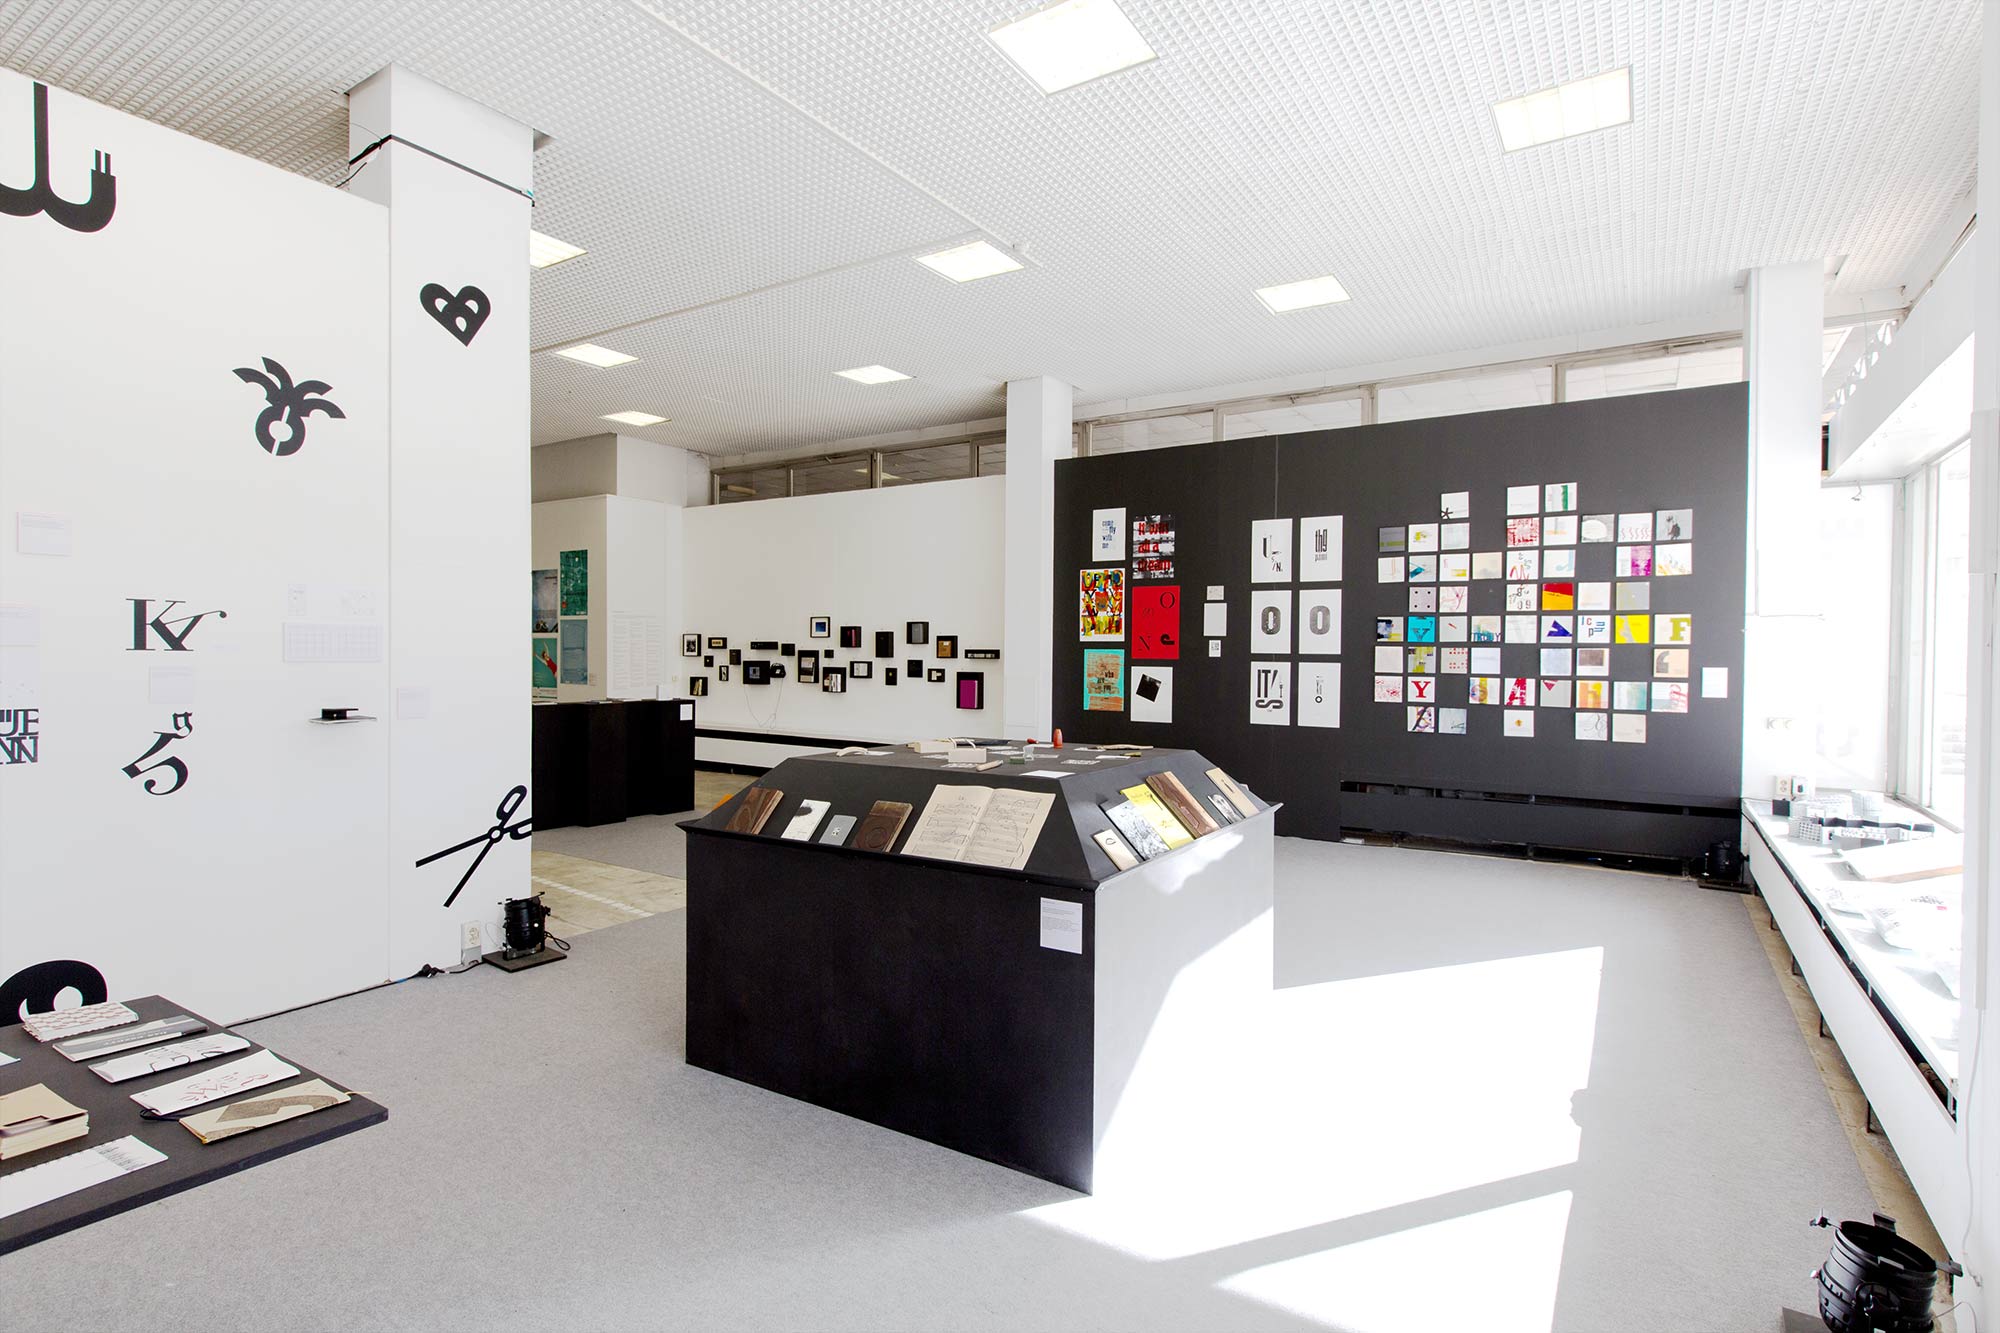 24pt – 24 Jahre Typografielehre in Potsdam – Ausstellungsgestaltung